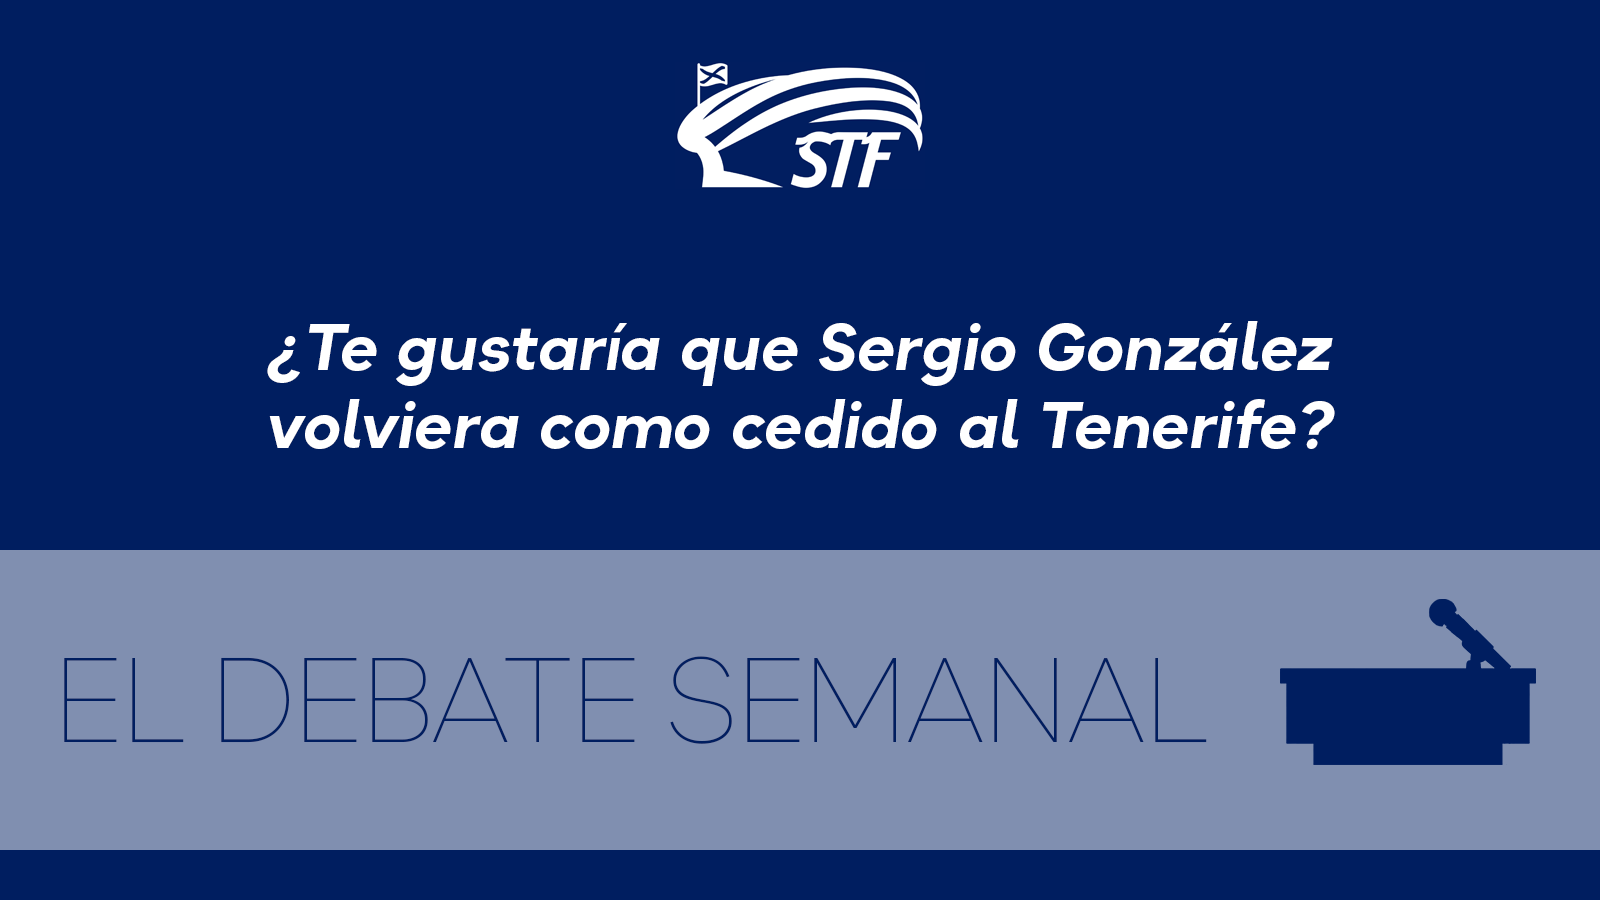 El Debate Semanal: ¿Te gustaría que Sergio González volviera como cedido al Tenerife? El 95,8% dice sí